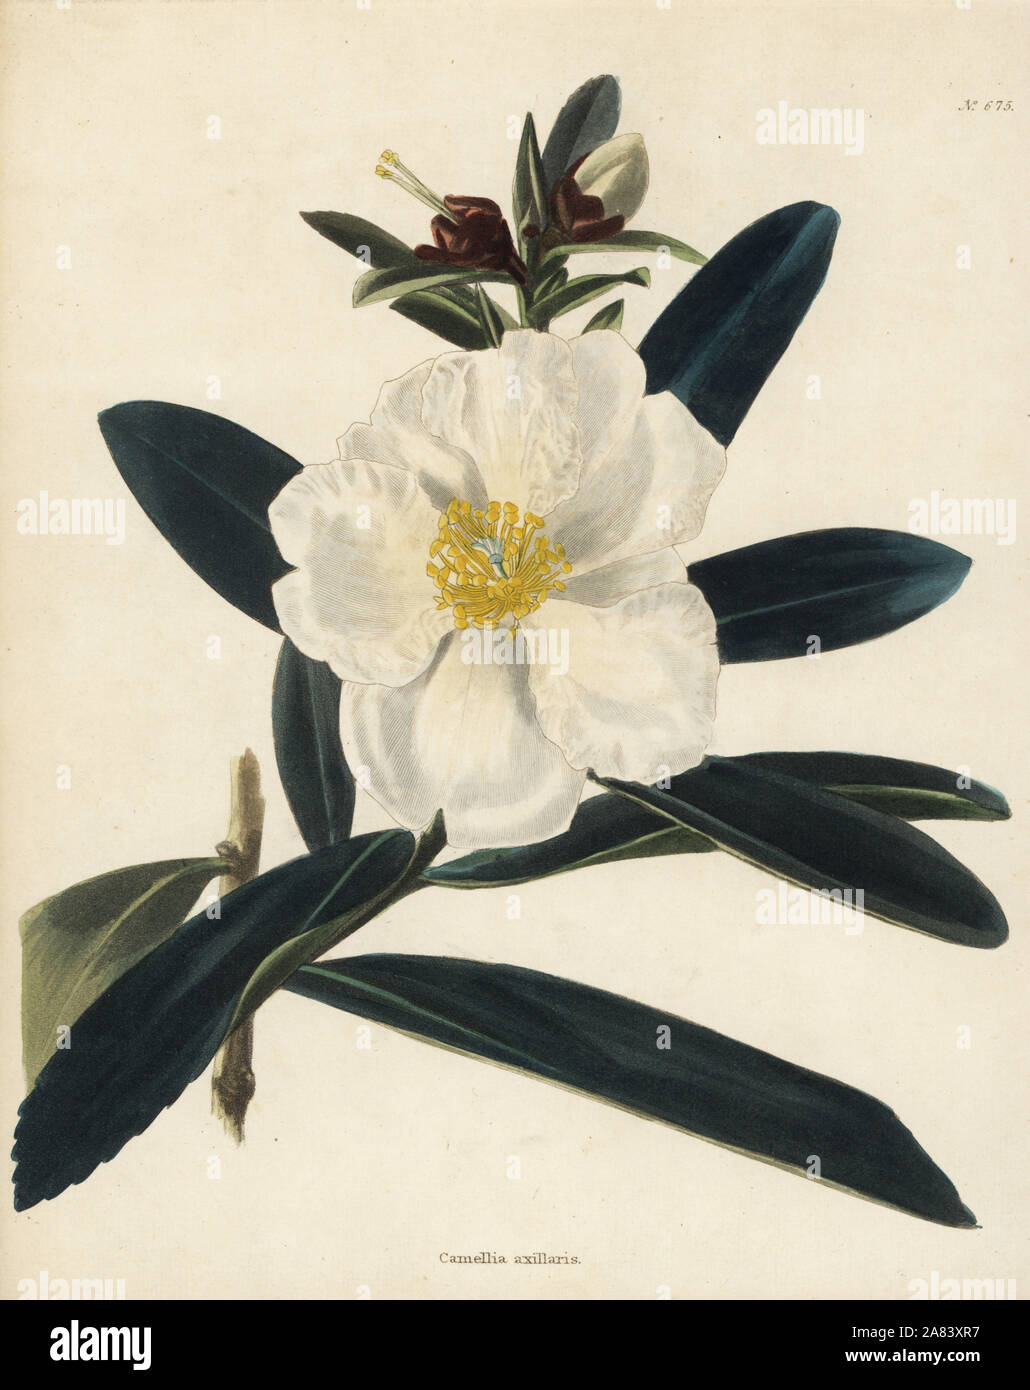 Uovo fritto vegetale, Gordonia axillaris (Camellia axillaris). Handcolored incisione su rame da George Cooke da Conrad Loddiges' armadio botanico, Hackney, 1820. Foto Stock